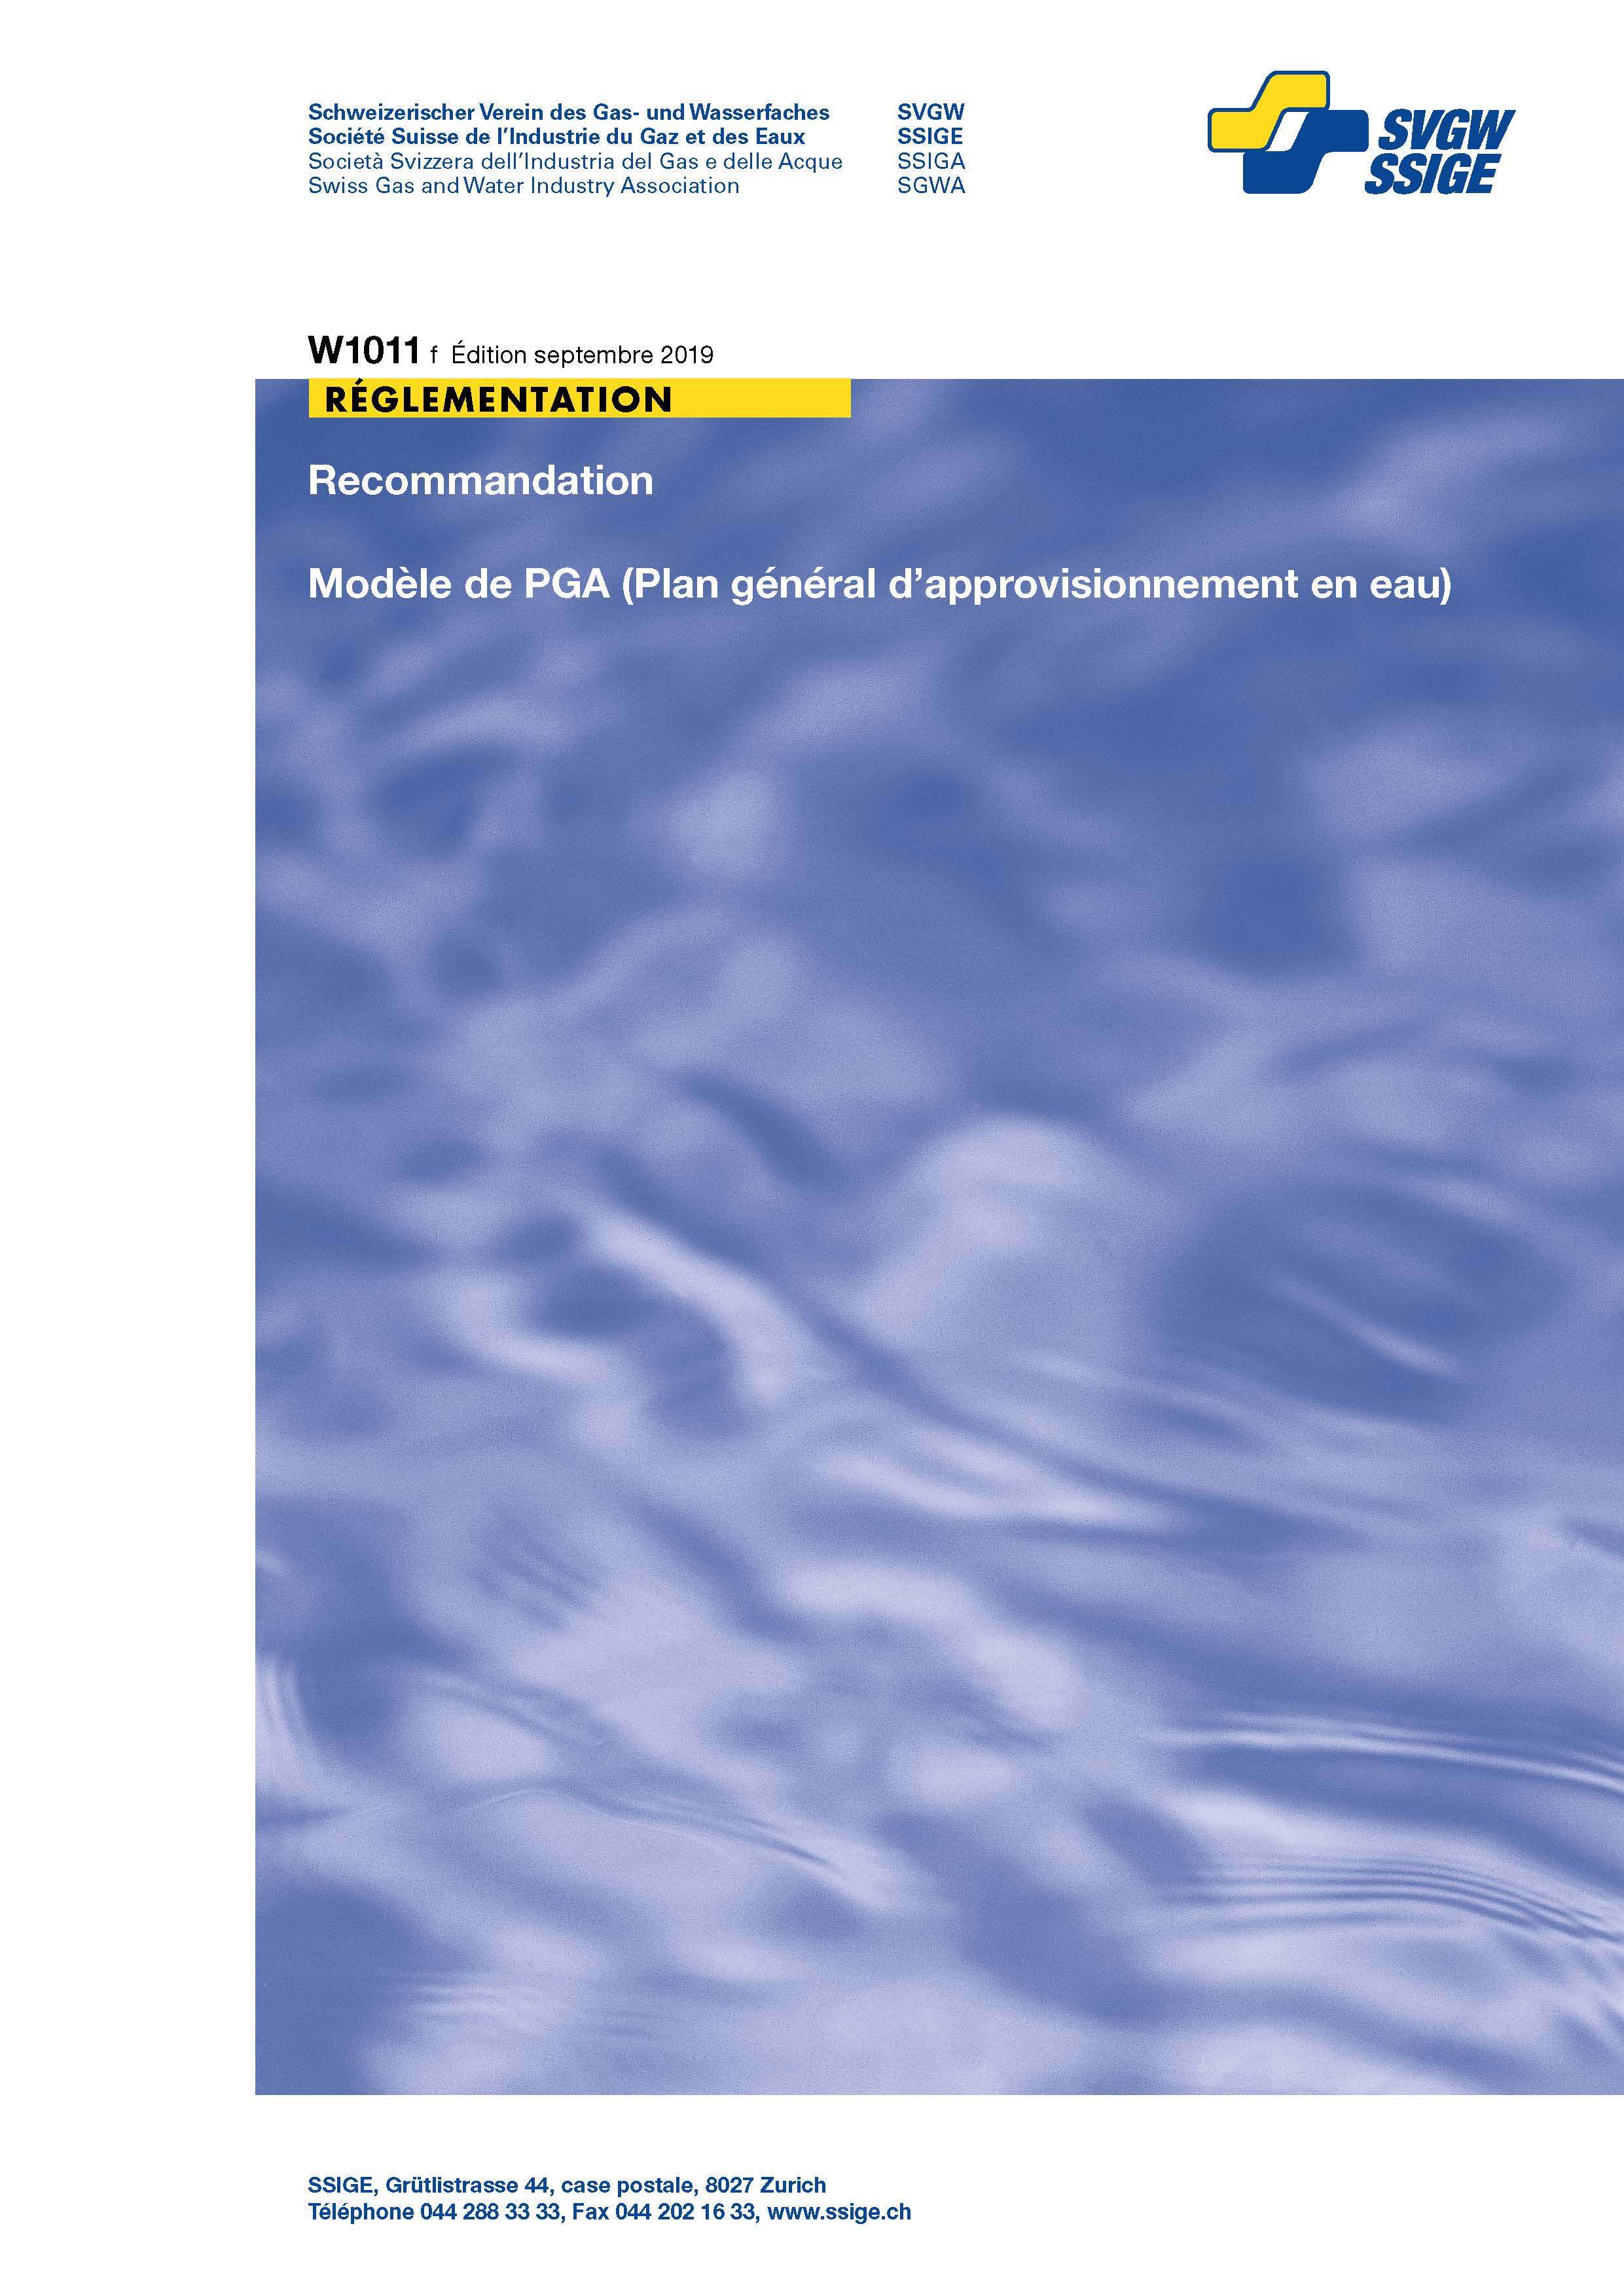 W1011 f Recommendation; Modèle de PGA (Plan général d’approvisionnement en eau) (1)